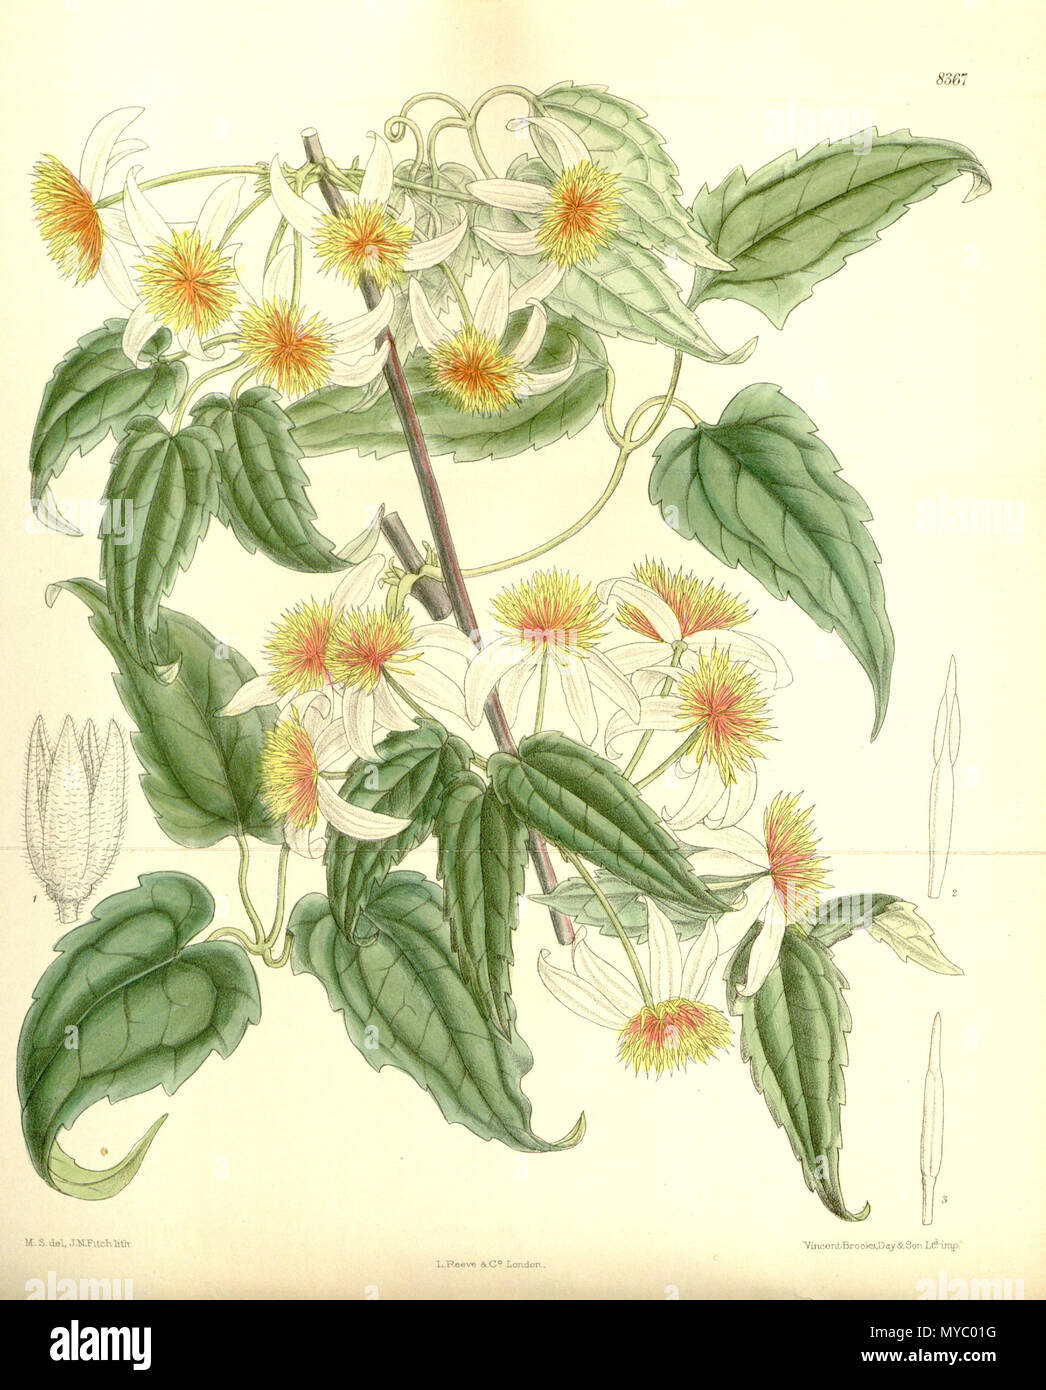 . Clematis aristata var. dennisae, Ranunculaceae . 1911. M.S. del, J.N.Fitch, lith. 114 Clematis aristata dennisae 137-8367 Stock Photo